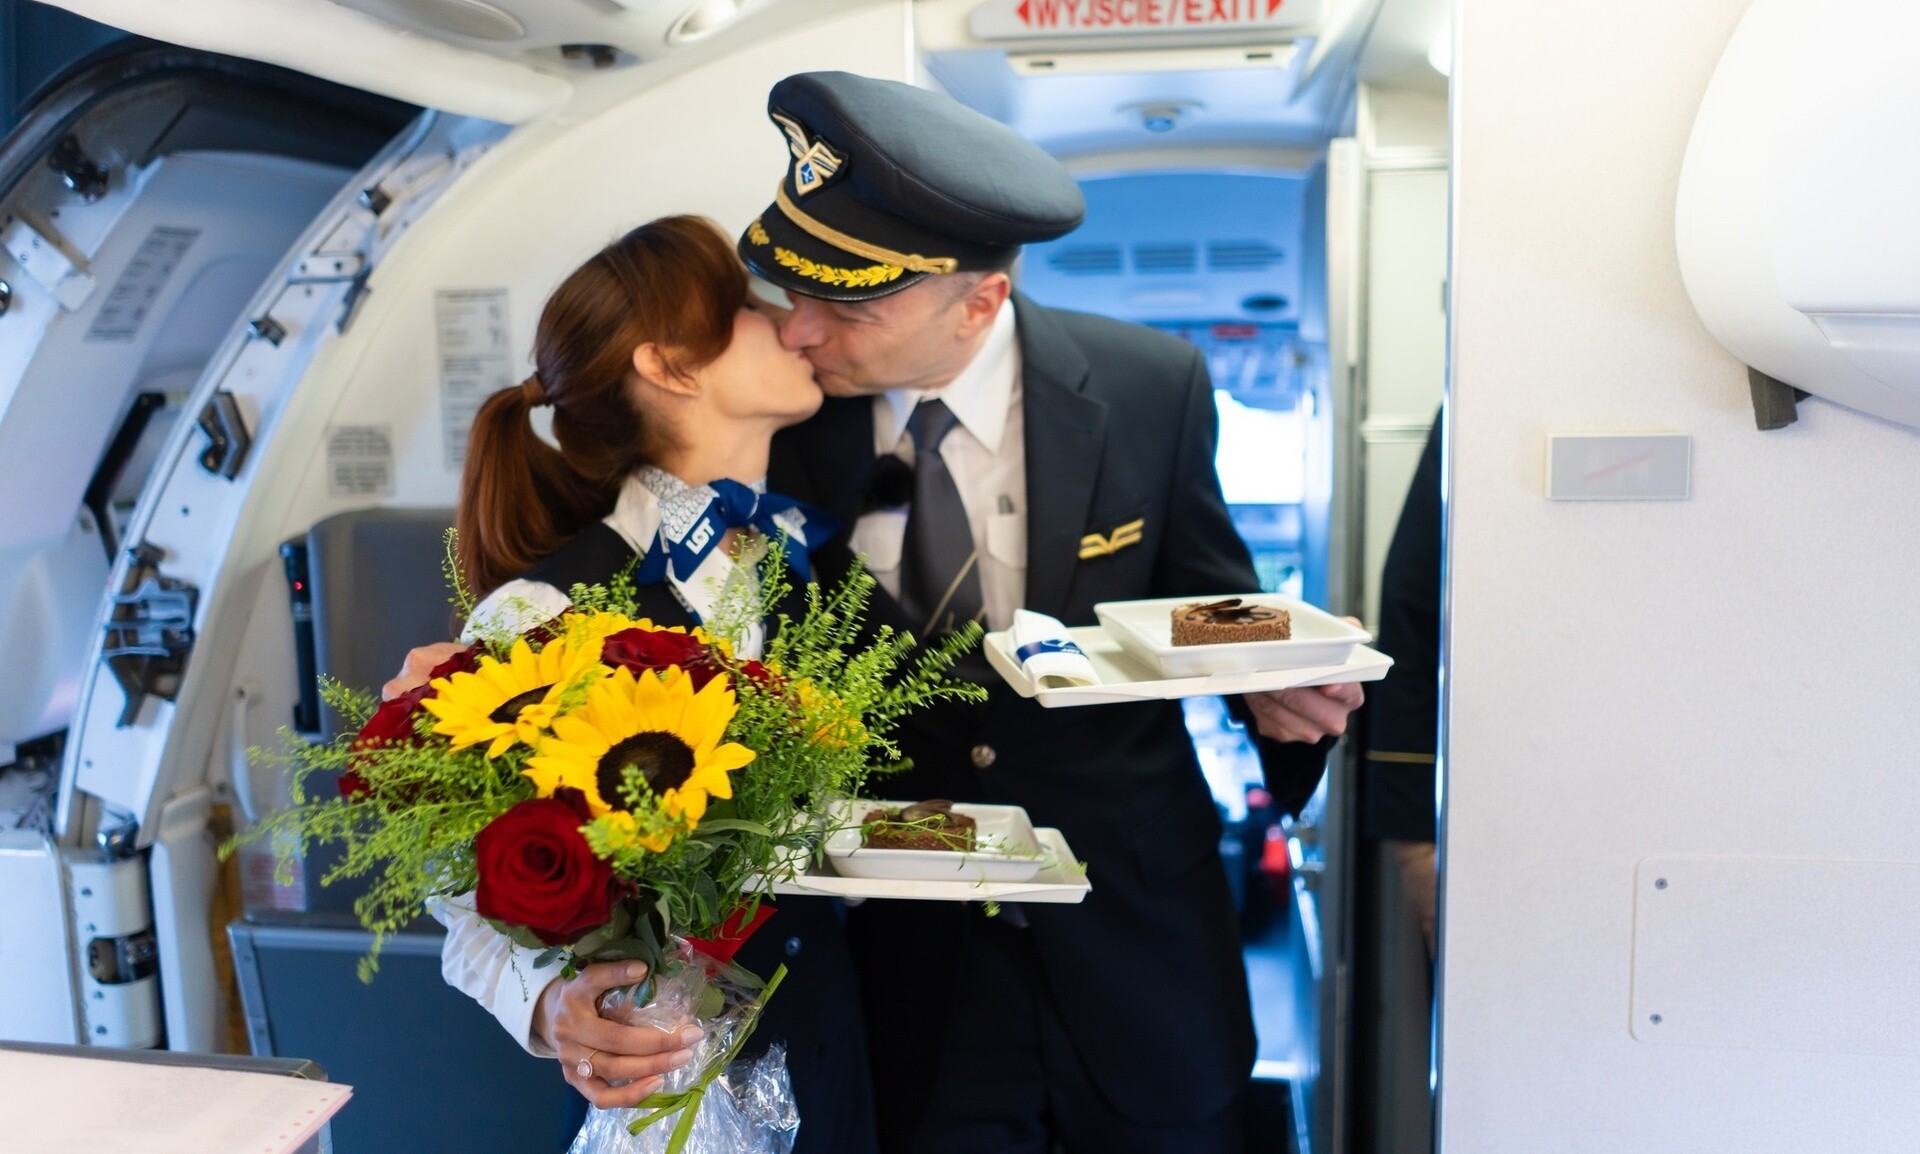 Πολωνία: Πιλότος έκανε πρόταση γάμου στην αεροσυνοδό σύντροφό του στη διάρκεια πτήσης (vid)